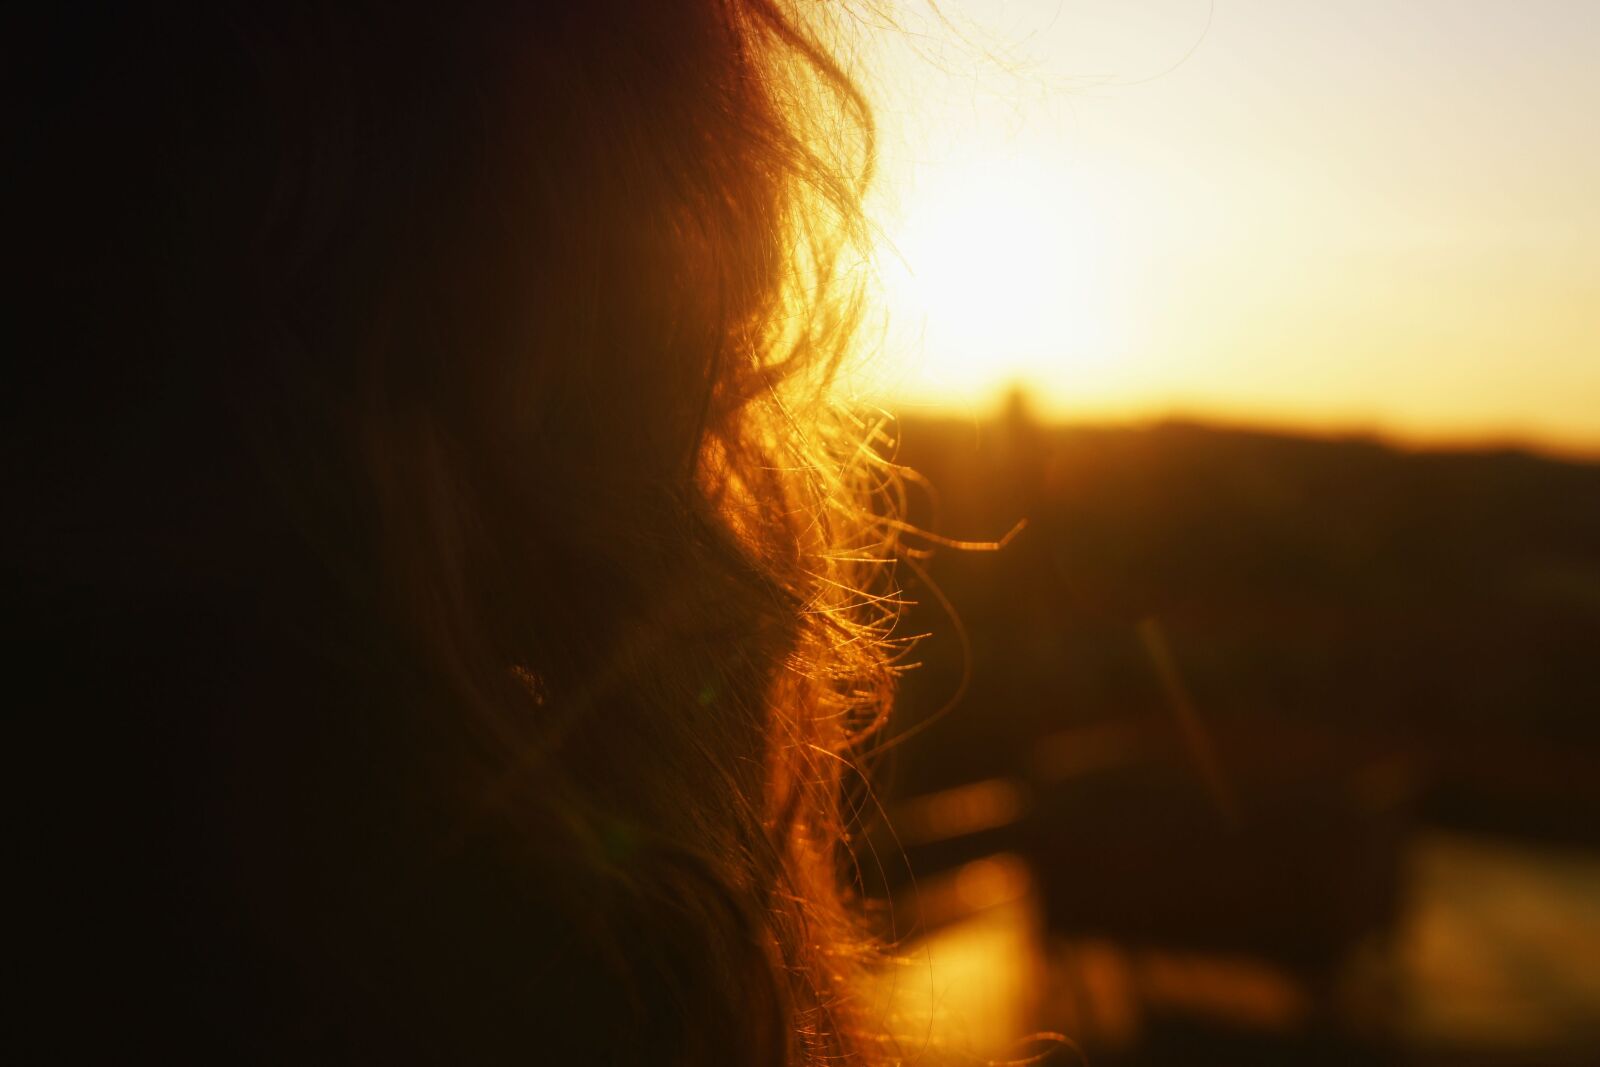 Sony Alpha DSLR-A500 sample photo. Sunrise, hair, woman photography